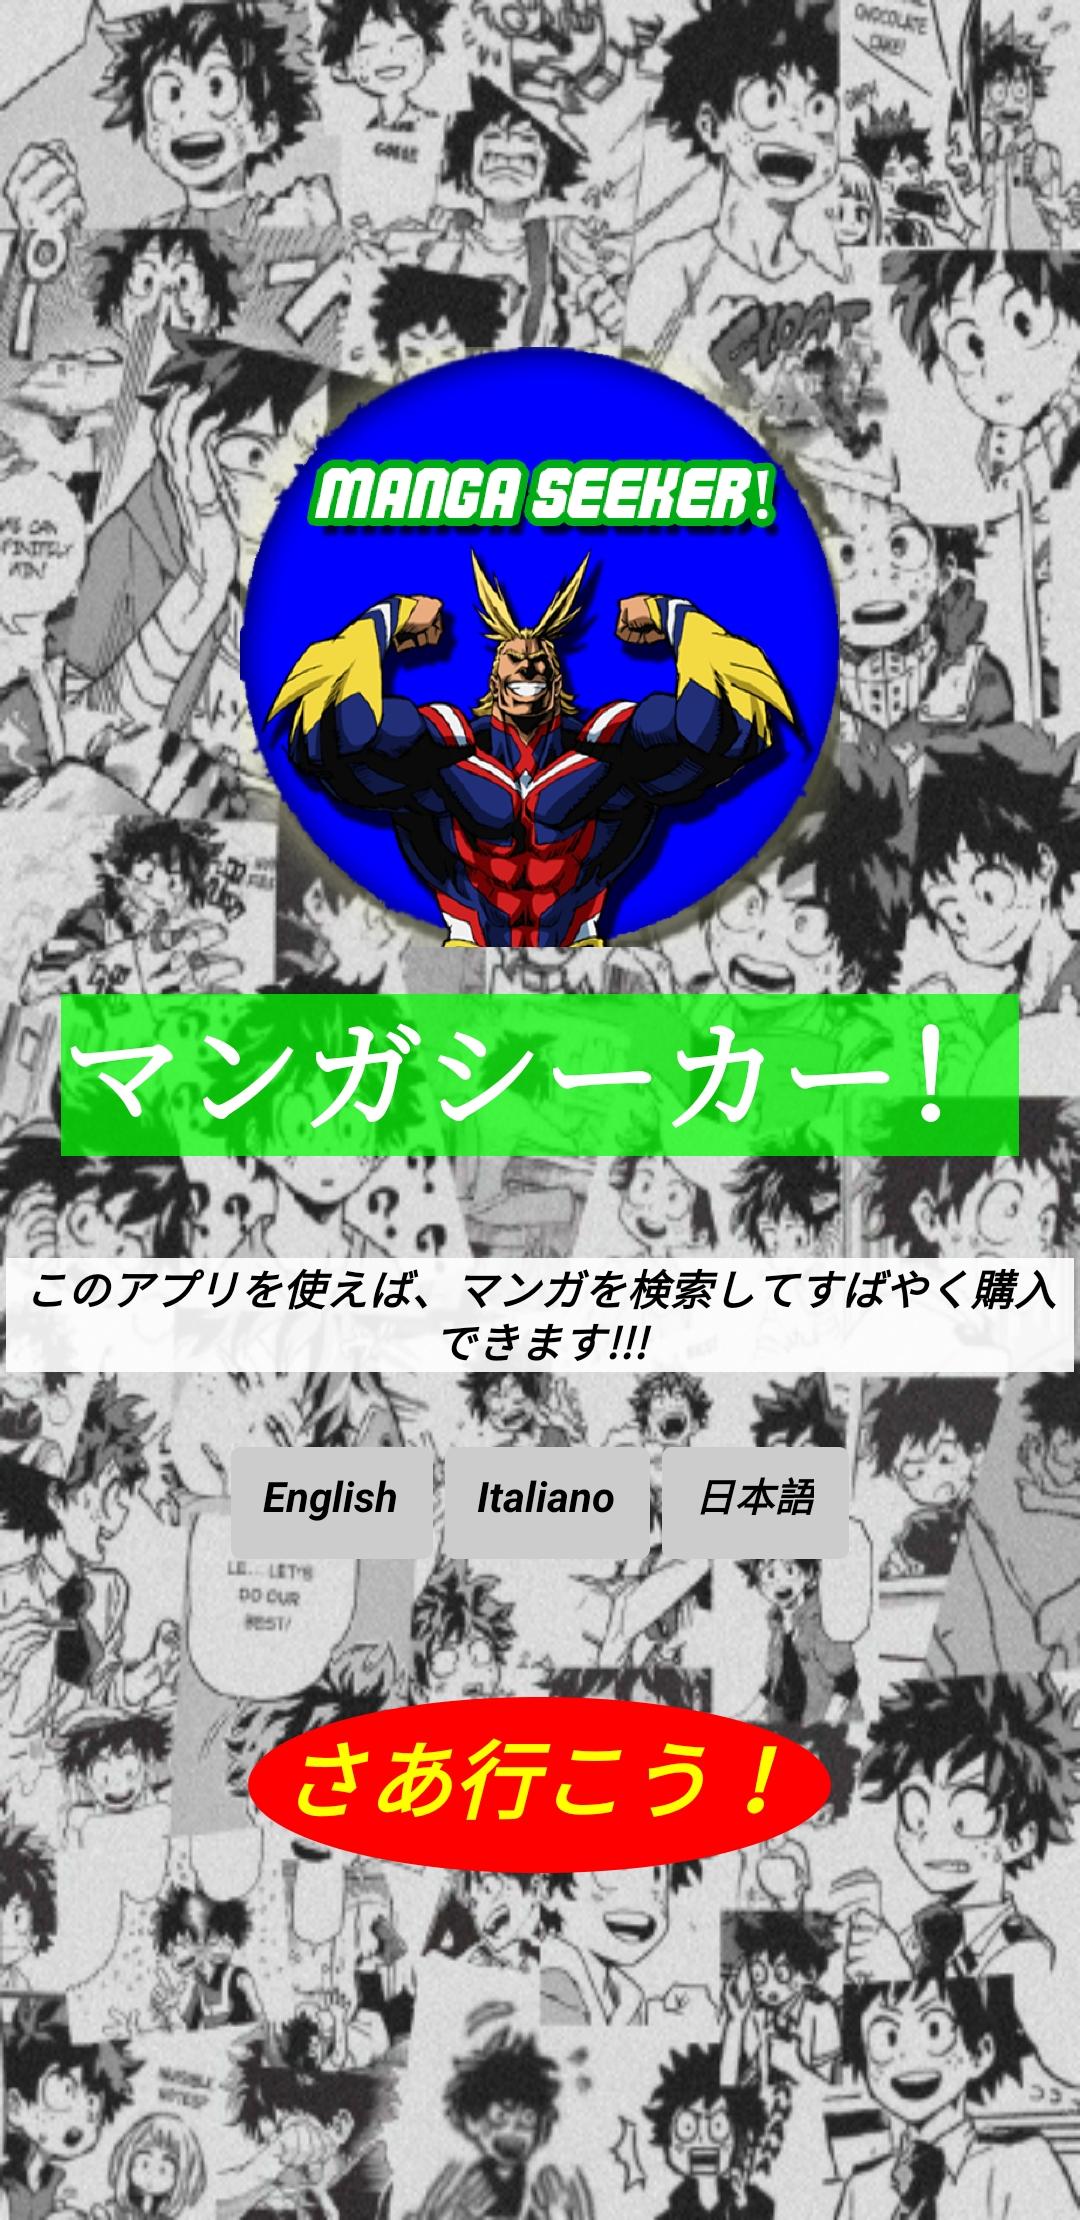 Manga Seeker! 1.1 Screenshot 4